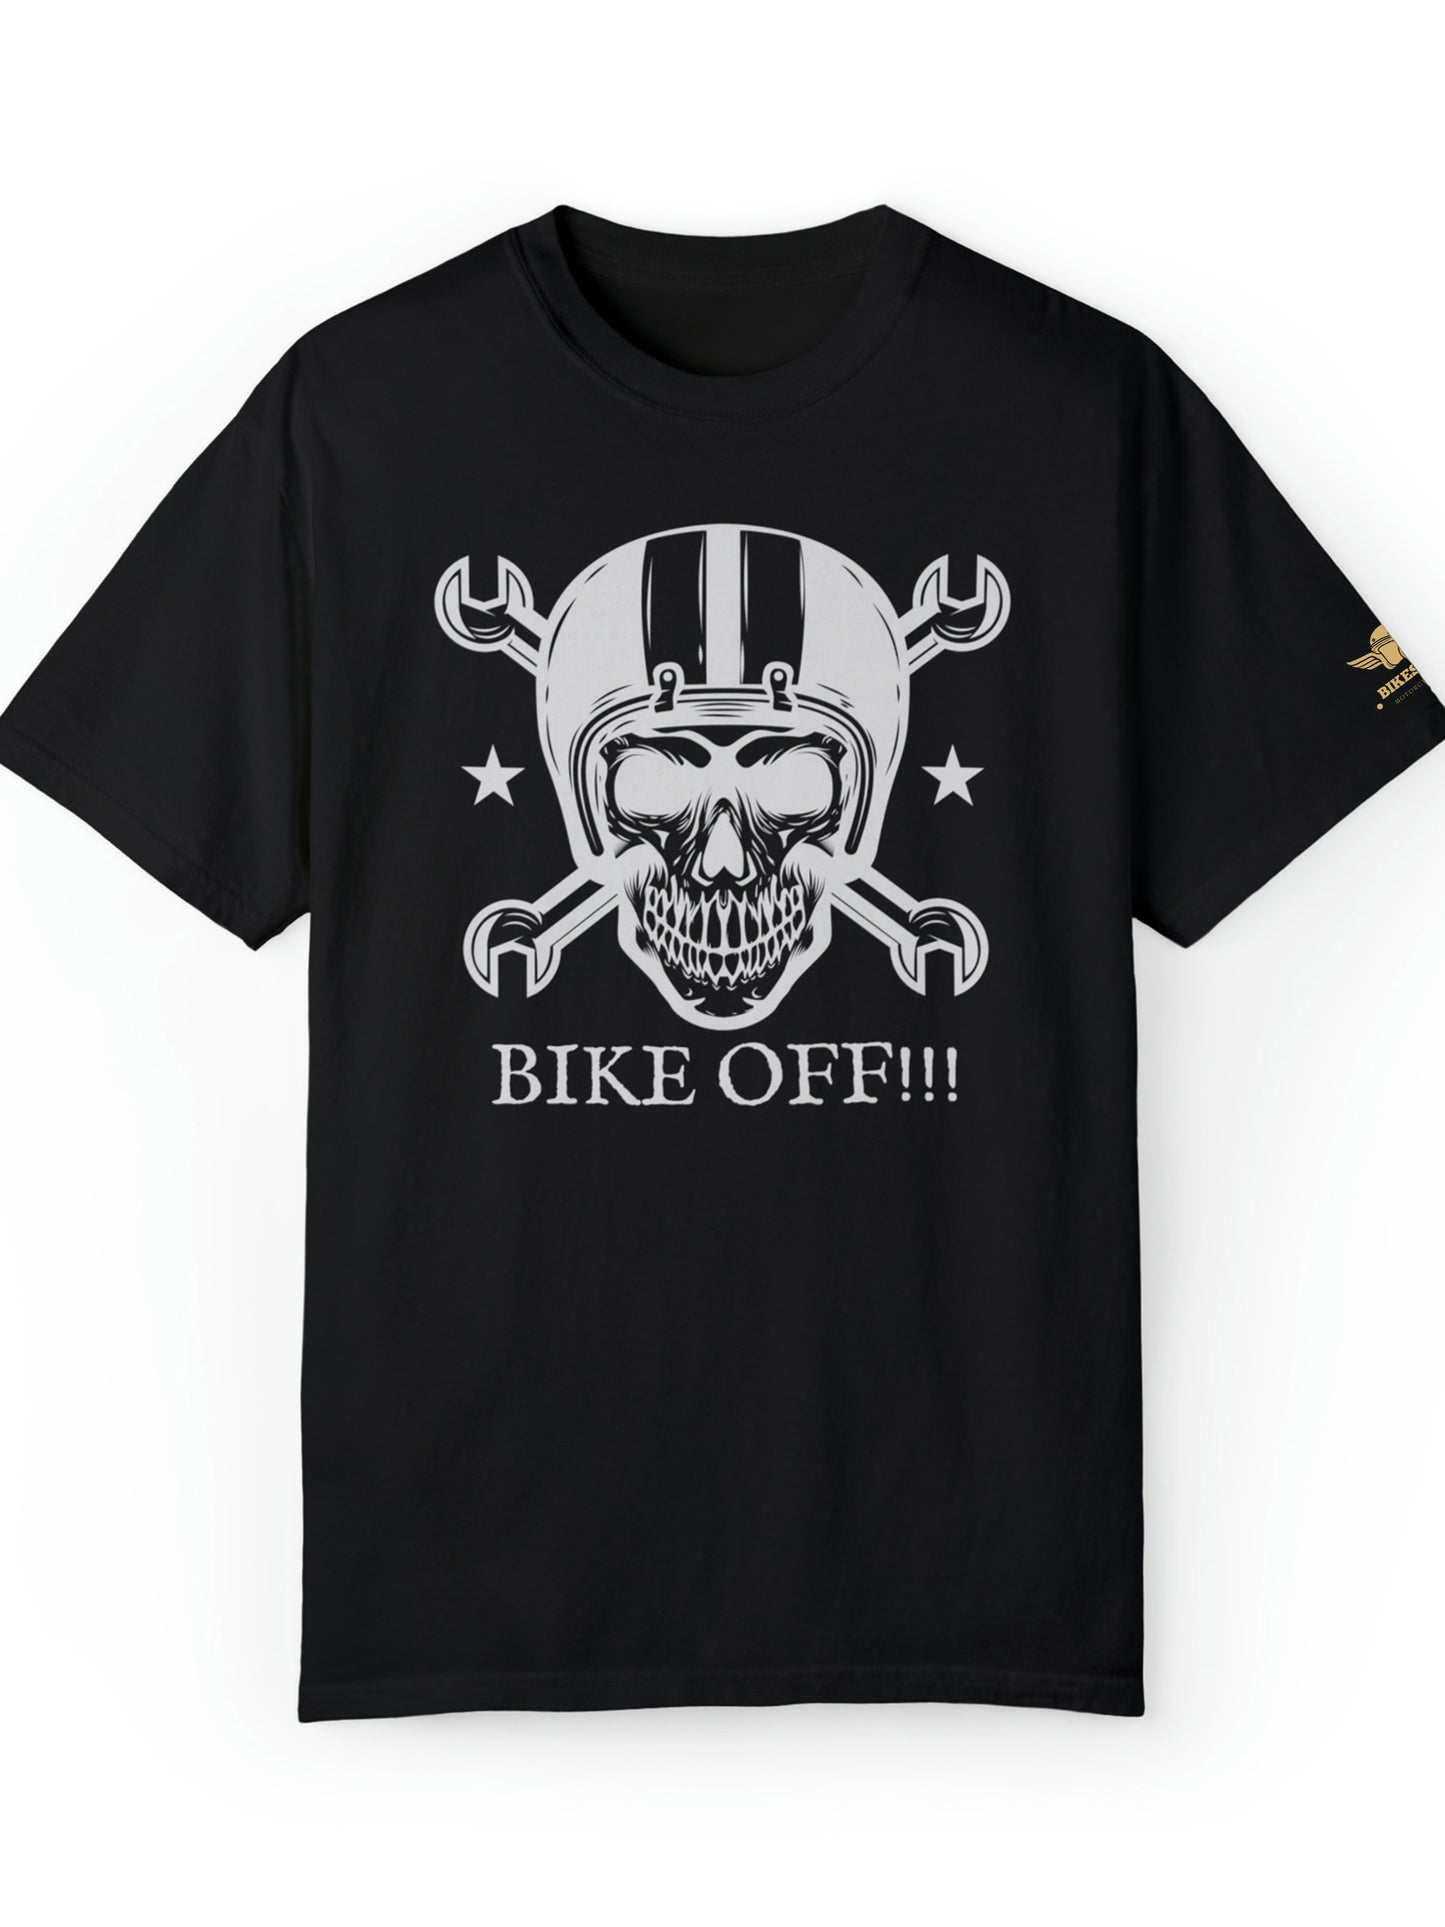 T-shirt moto à manches courtes noir - Bike off !!!